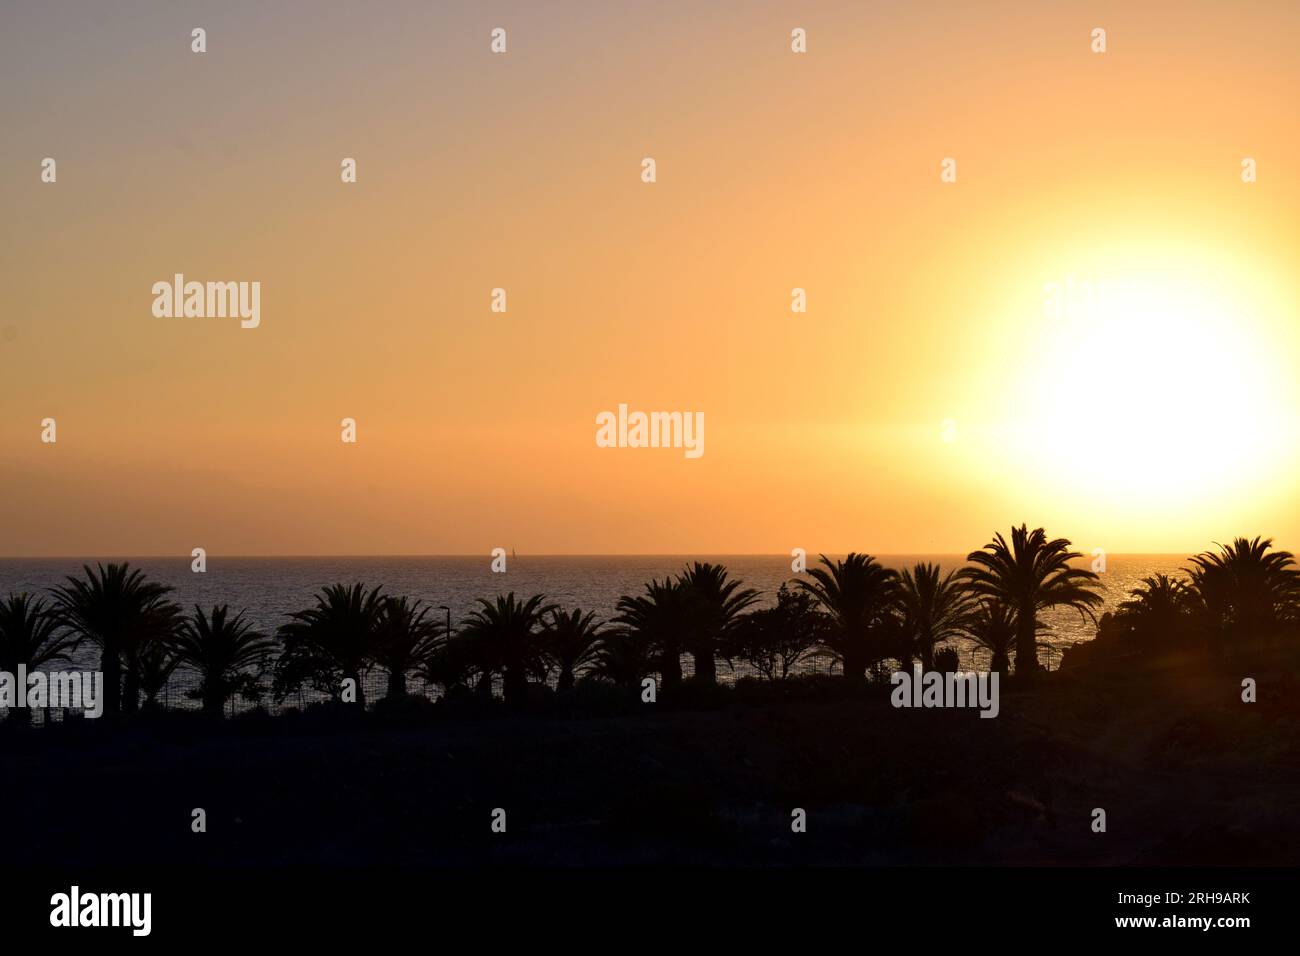 Sonnenuntergang am Meer mit Silhouetten von Palmen und hellgelber Sonne am Horizont Stockfoto